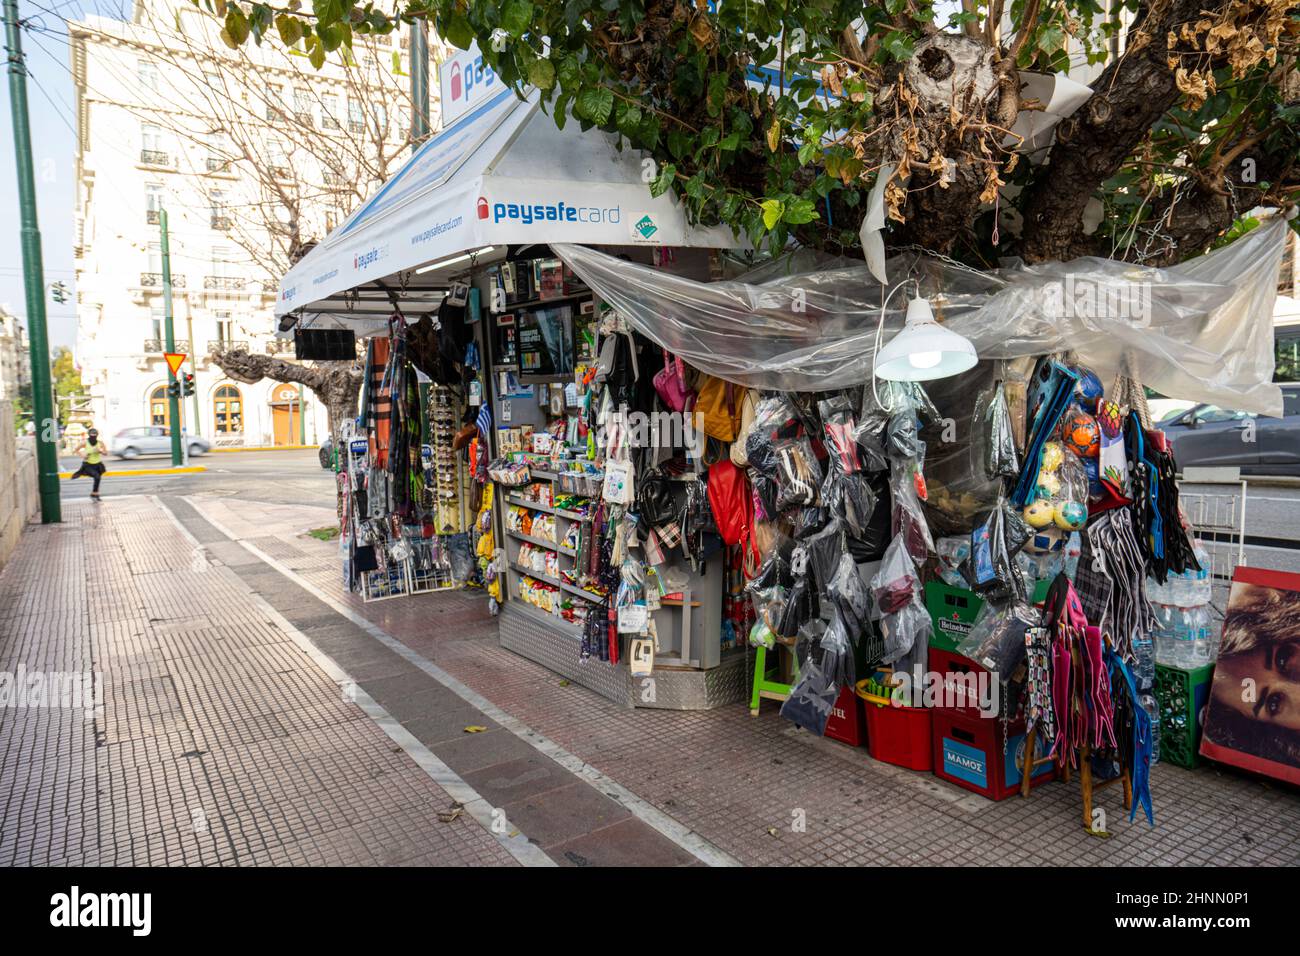 Minimarkt in einer Straße von Athen, Griechenland Stockfoto